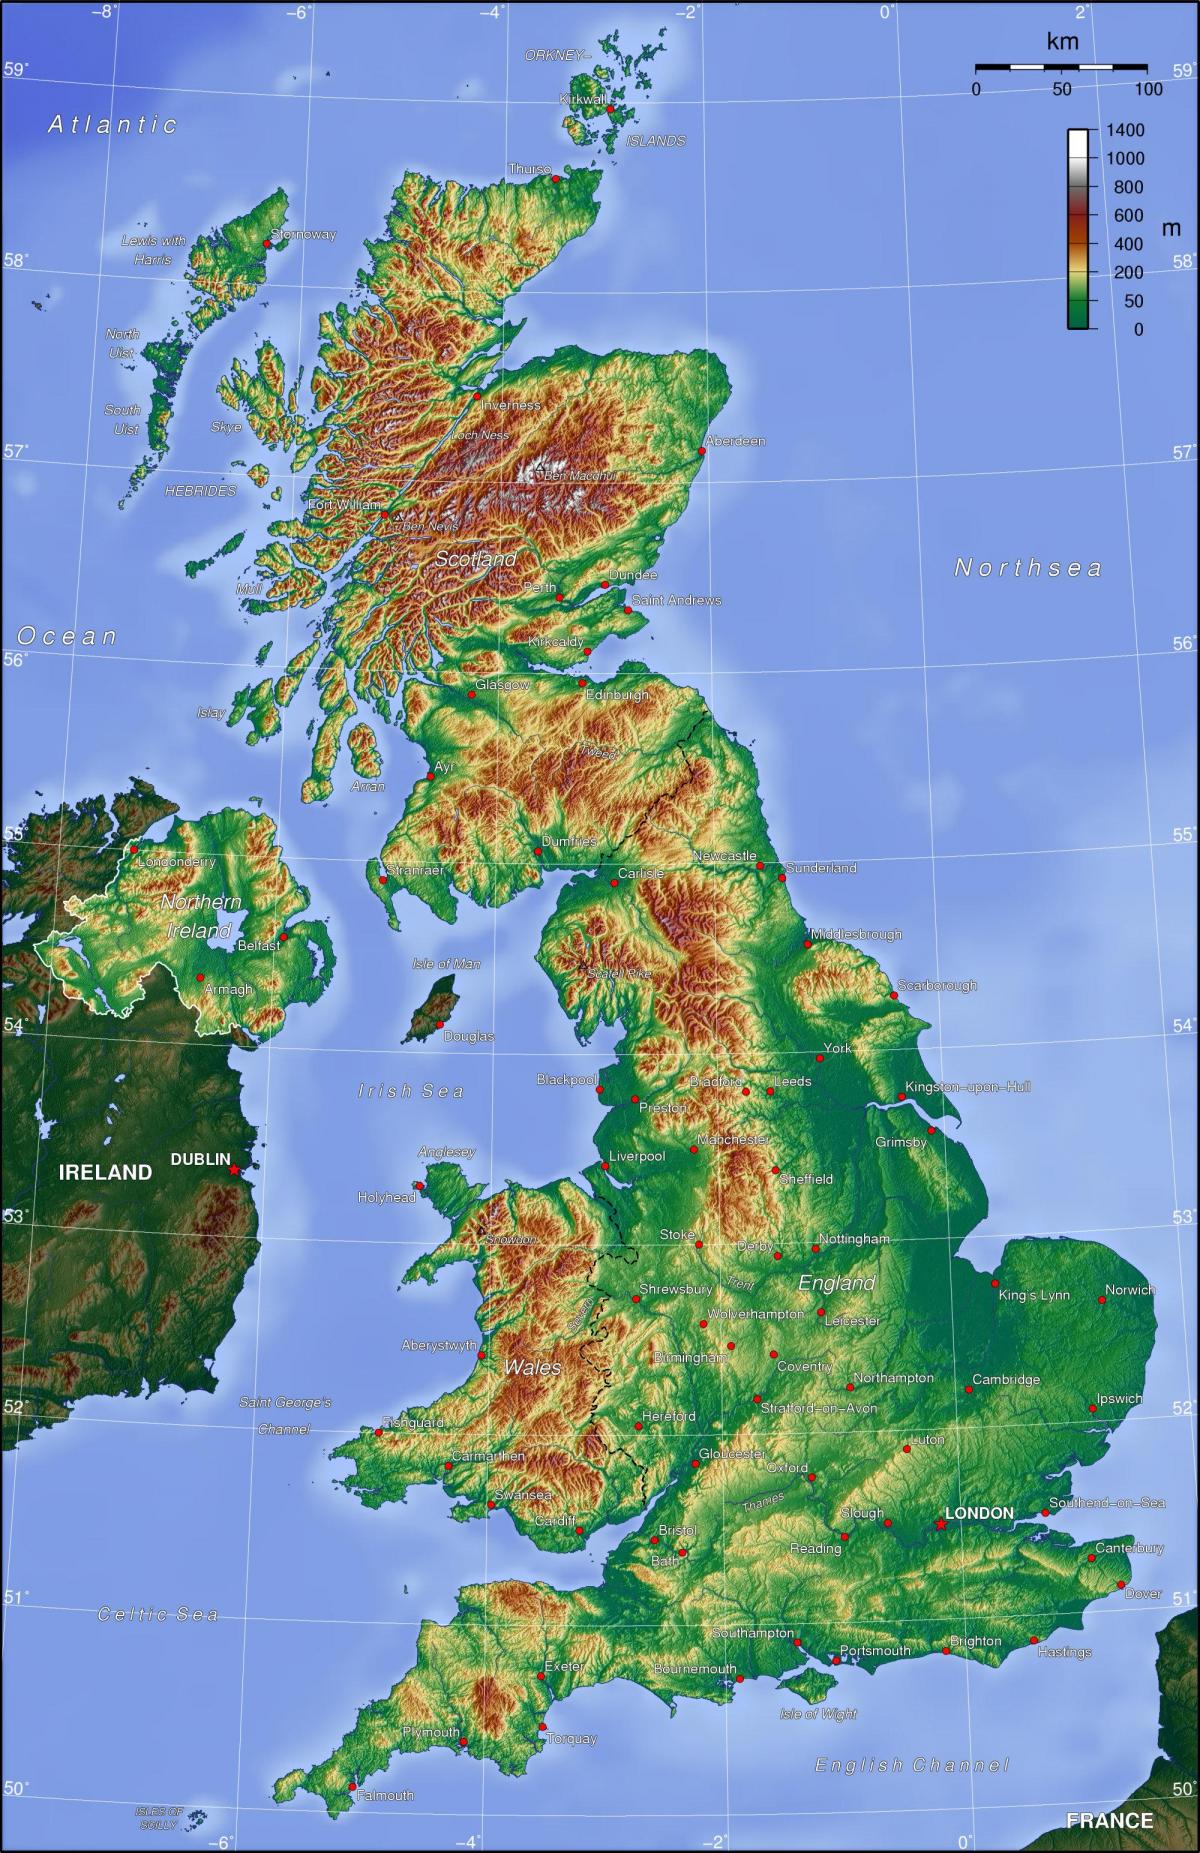 Mapa topograficzna Zjednoczonego Królestwa (UK)